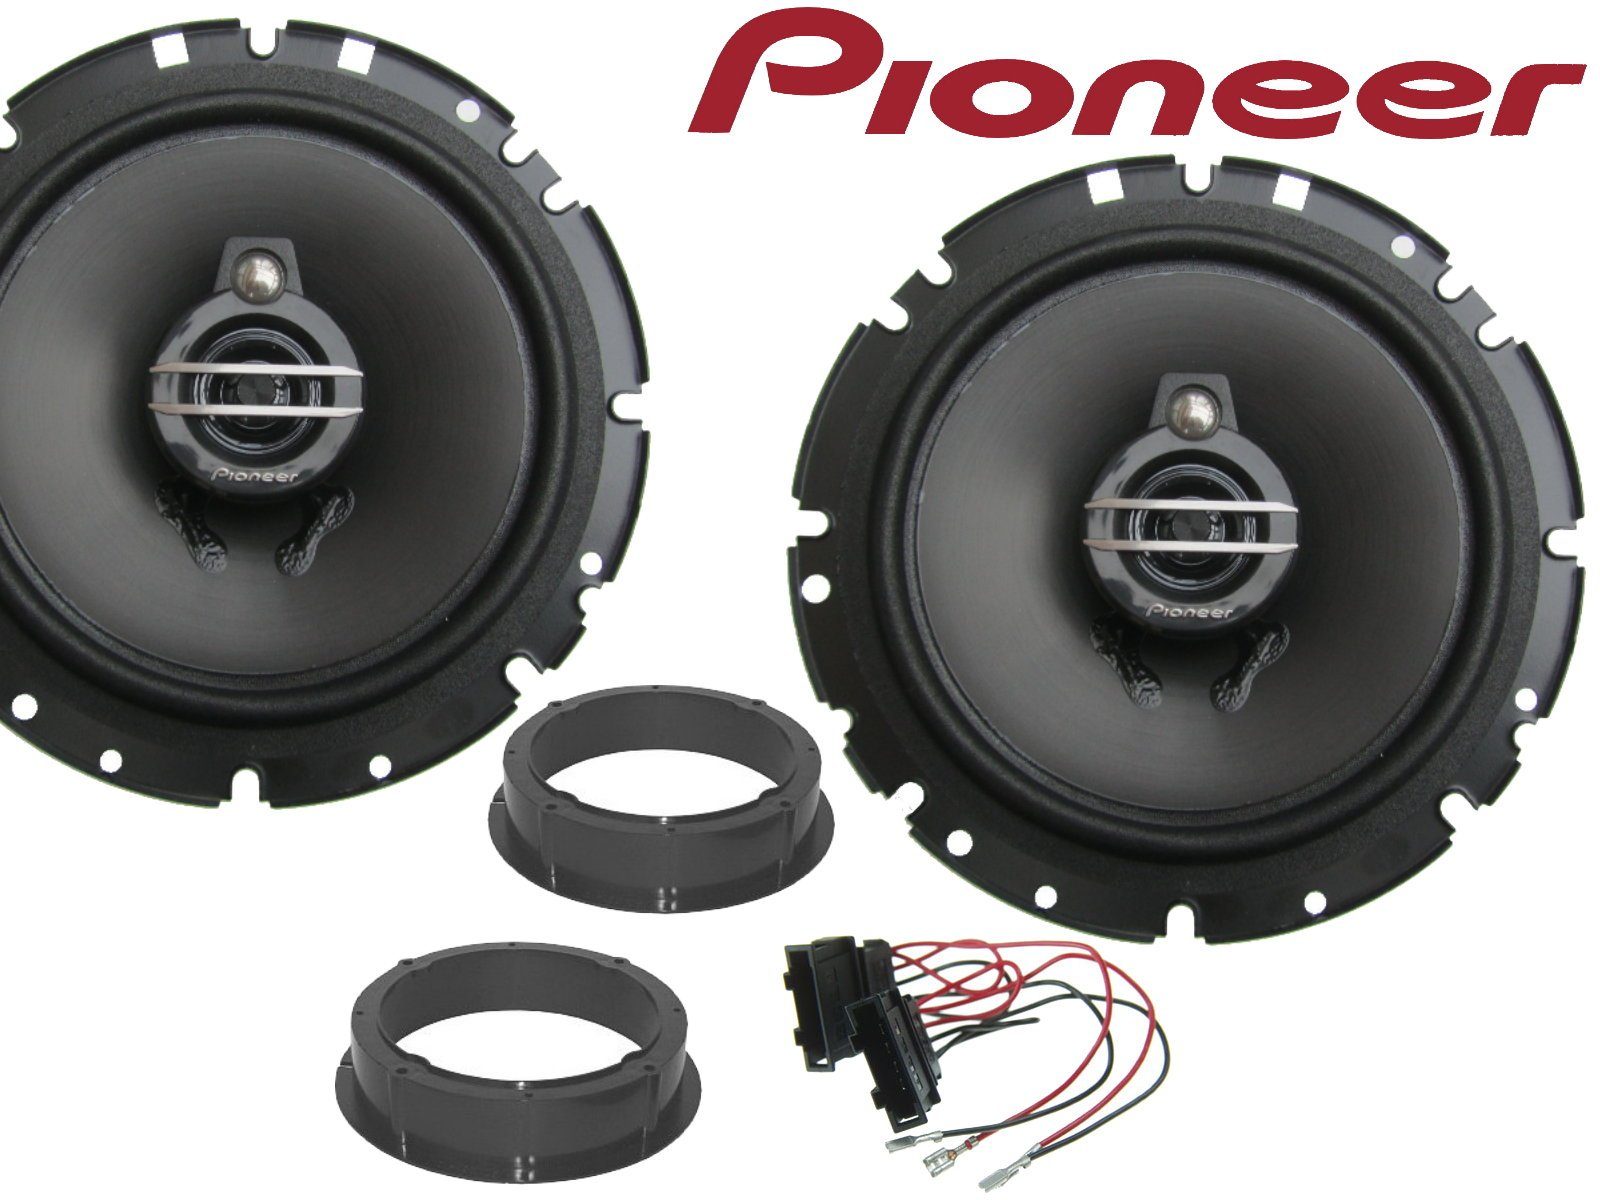 DSX Pioneer 3Wege passend für Auto-Lautsprecher (40 W) Mii Seat Lautsp 11-21 Bj